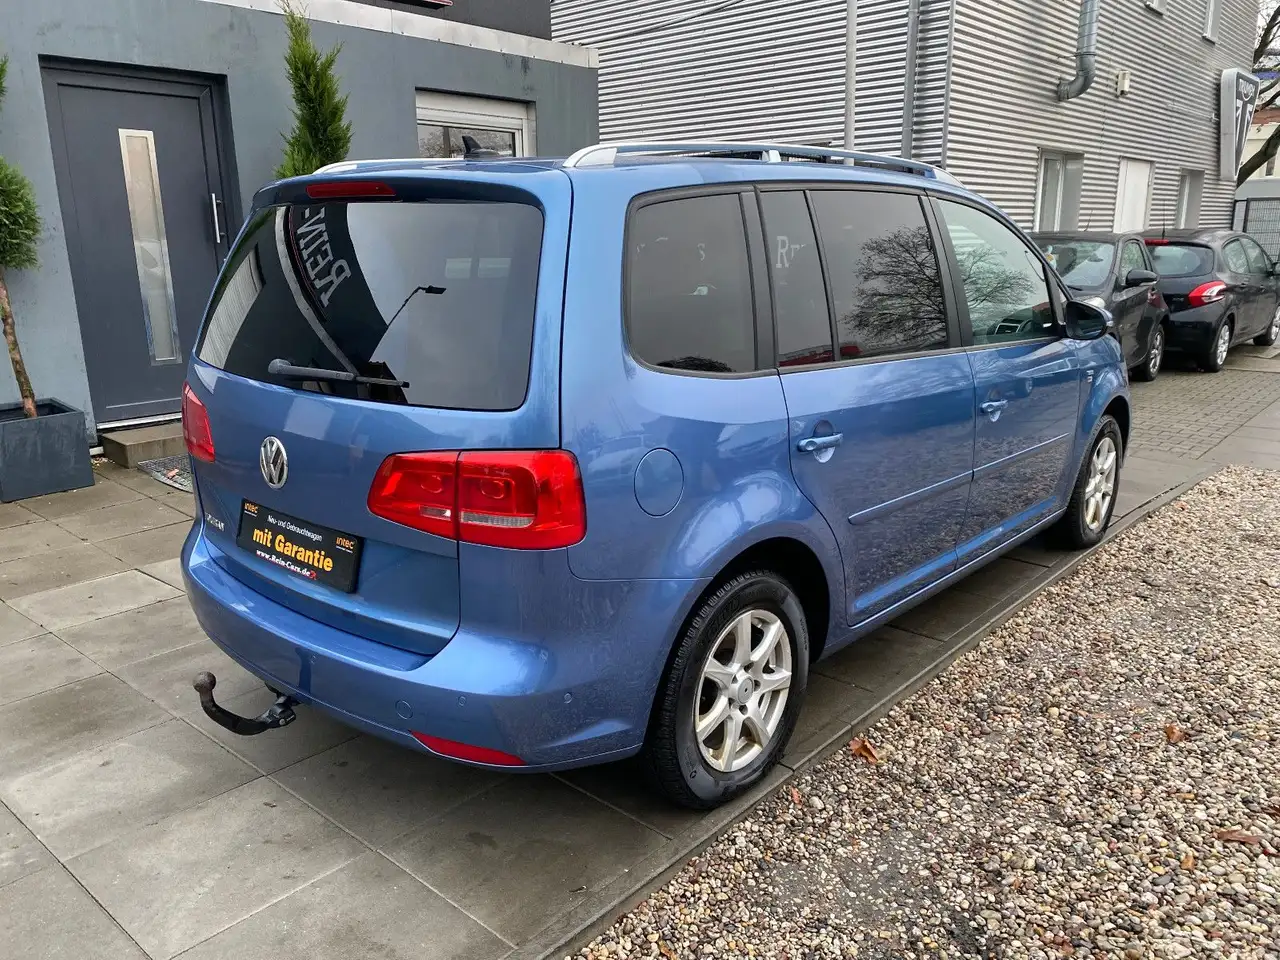 Volkswagen Touran Van/Kleinbus in Blau gebraucht in Unterpurkla für € 25  990